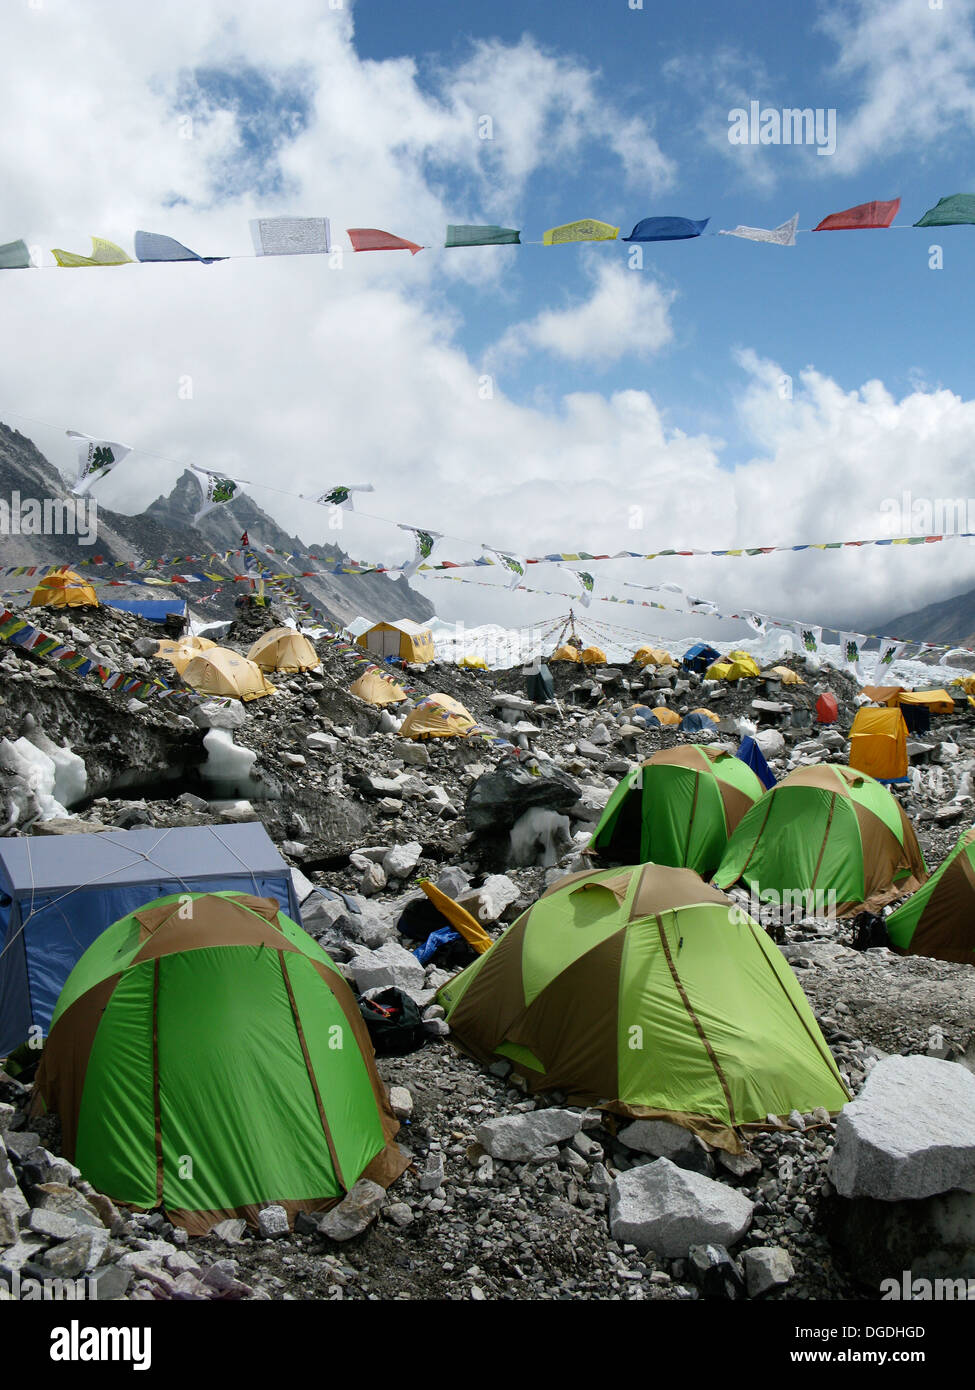 Die bunten Zelte von Everest Base Camp punktieren die Landschaft am Fuße des Mount Everest in Nepal. Stockfoto